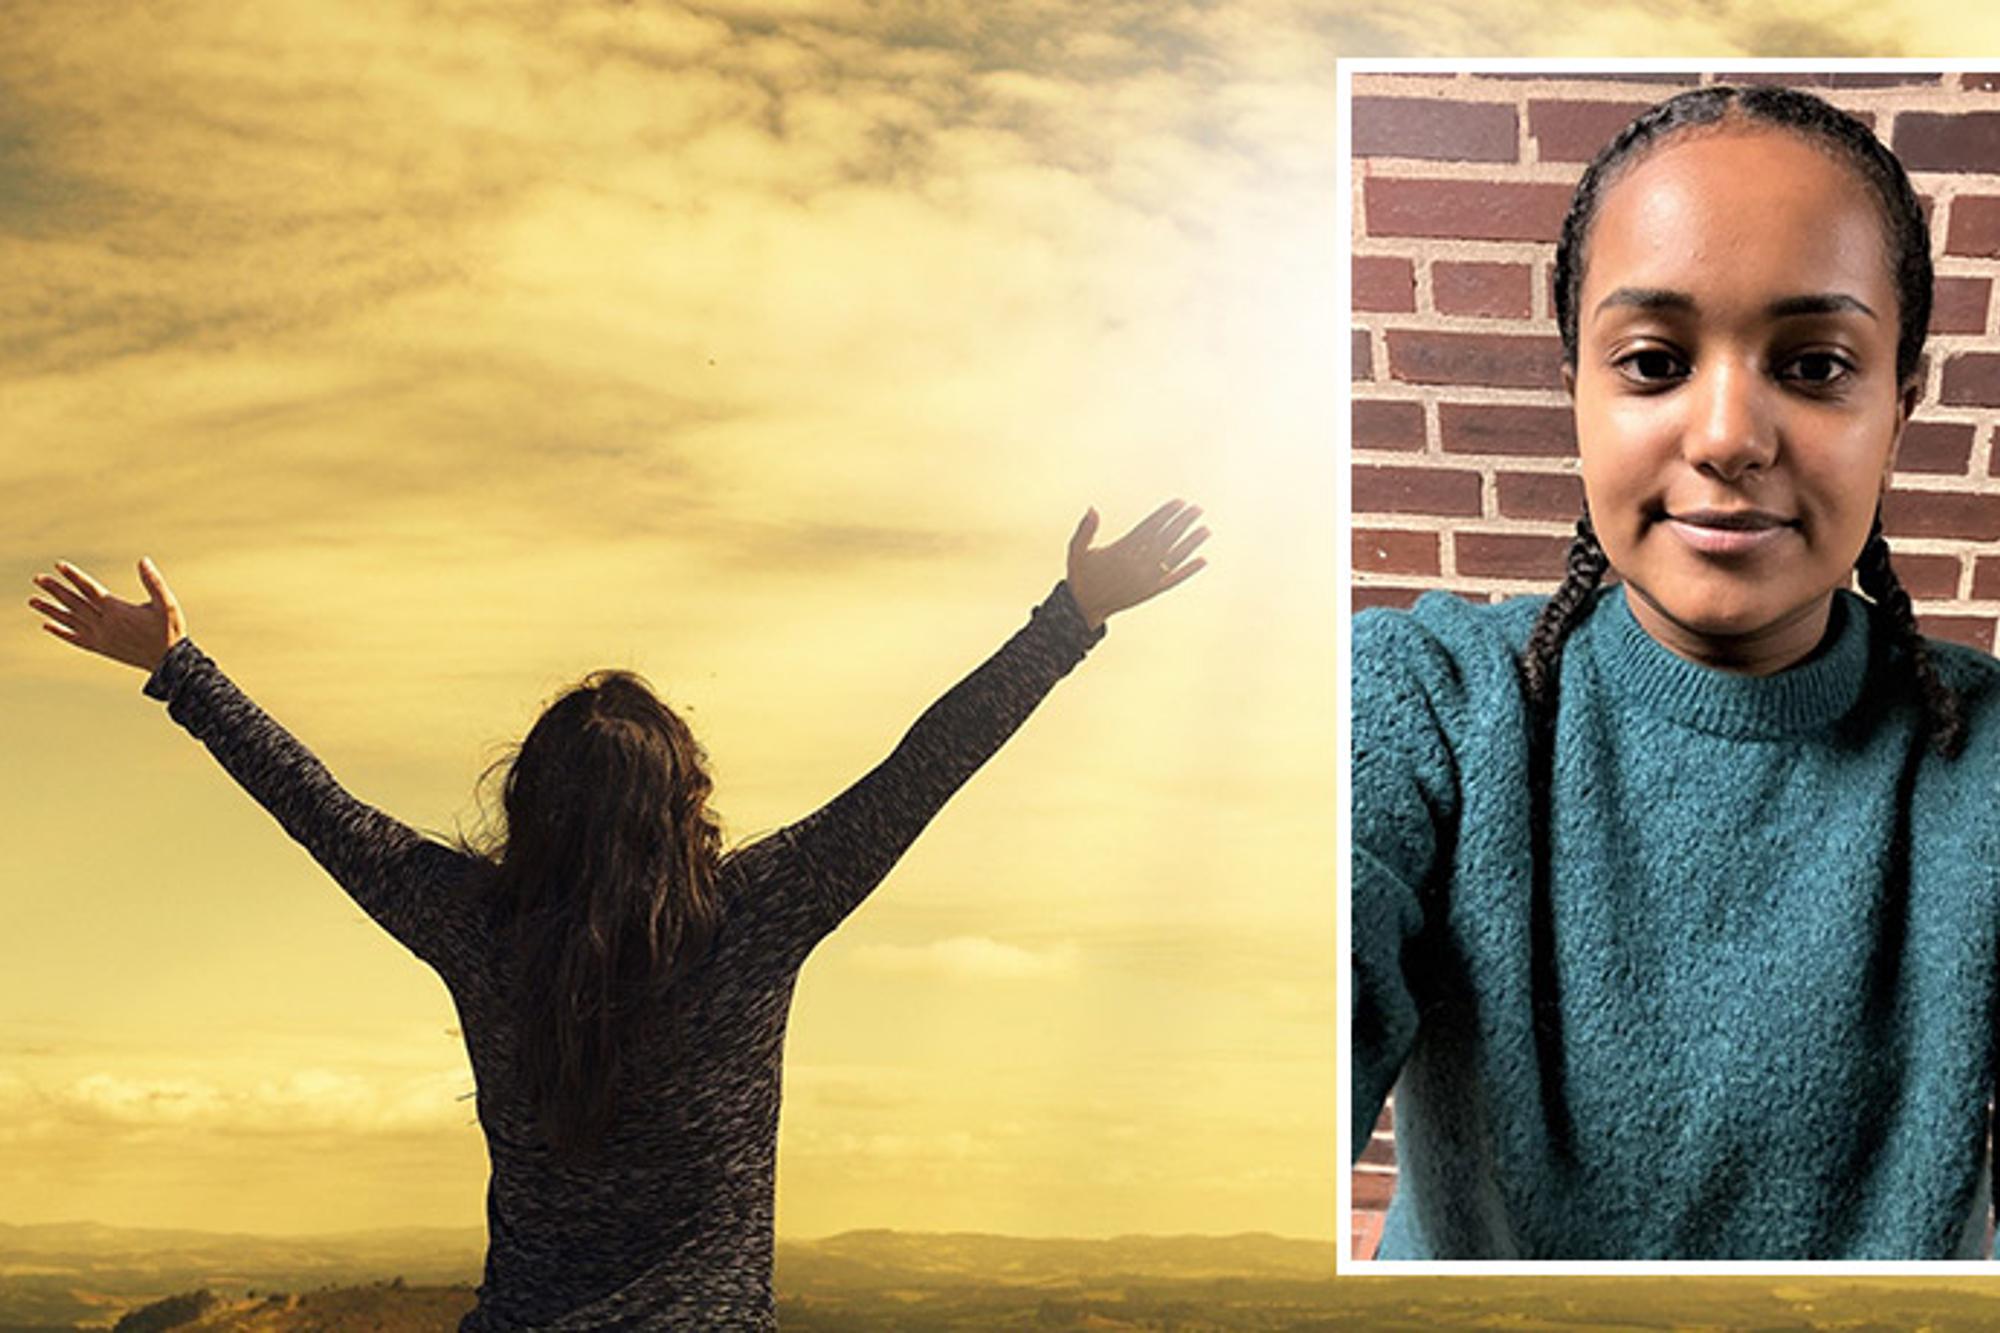 Till vänster: Ryggtavlan på en kvinna som sträcker arma upp i luften mot himlen. Till höger: Porträttbild av Fiore Gebregergi.